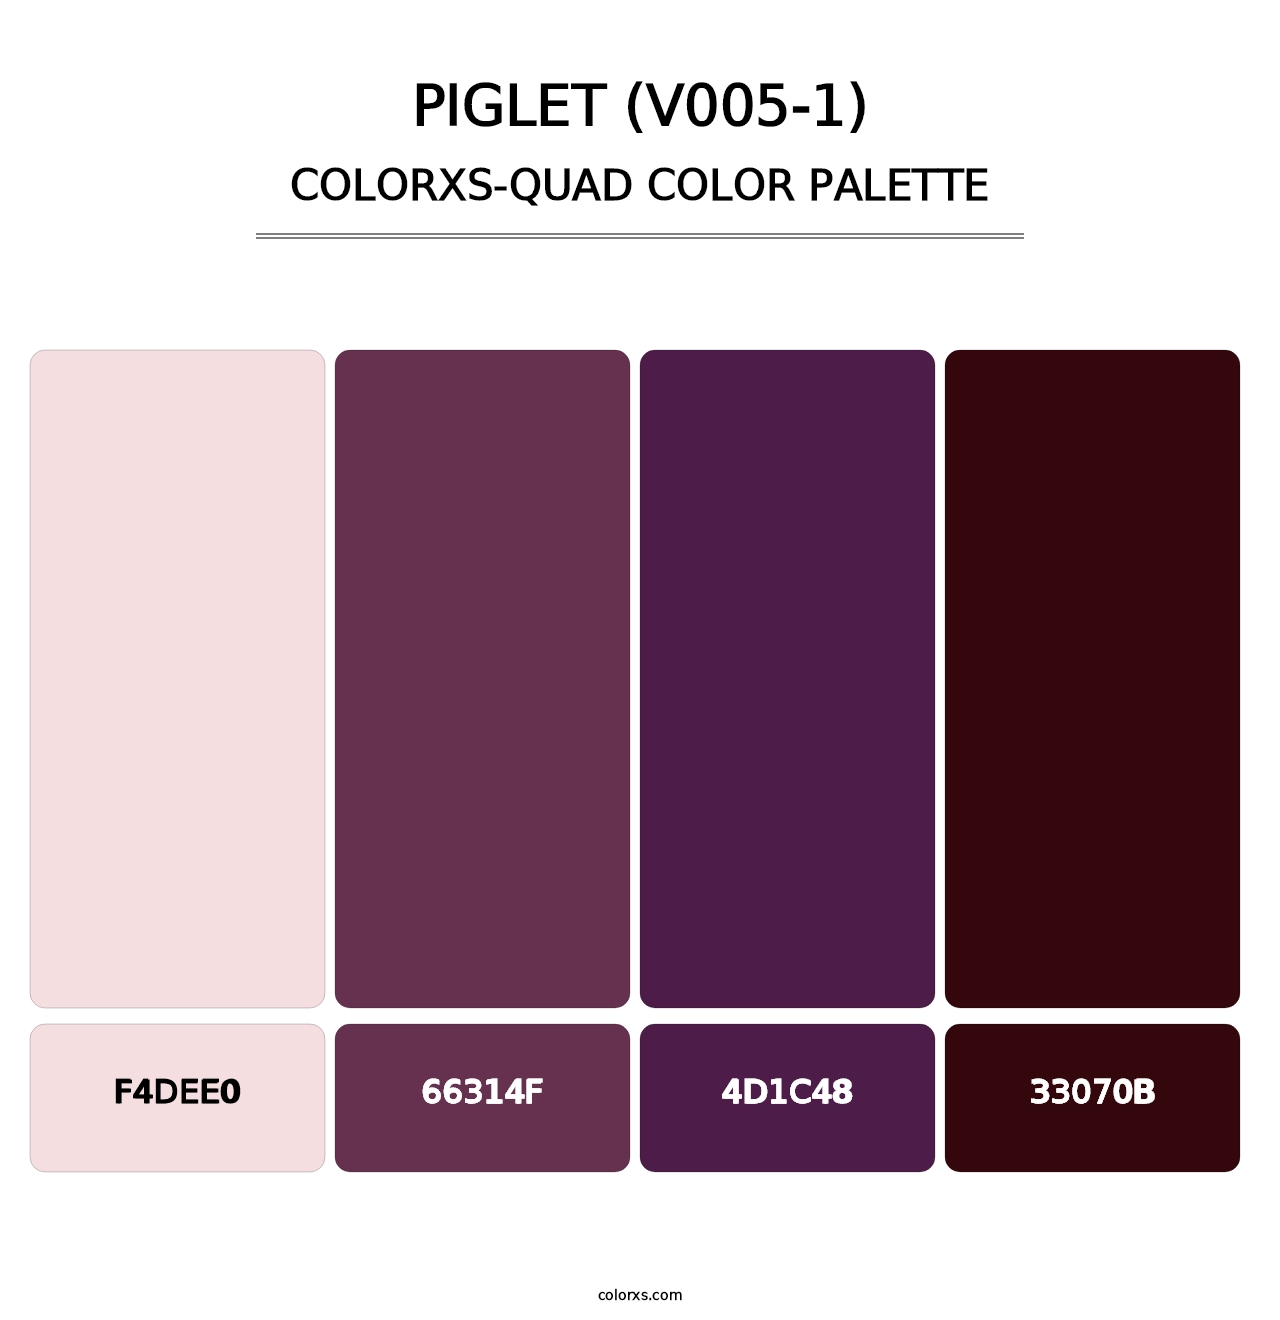 Piglet (V005-1) - Colorxs Quad Palette